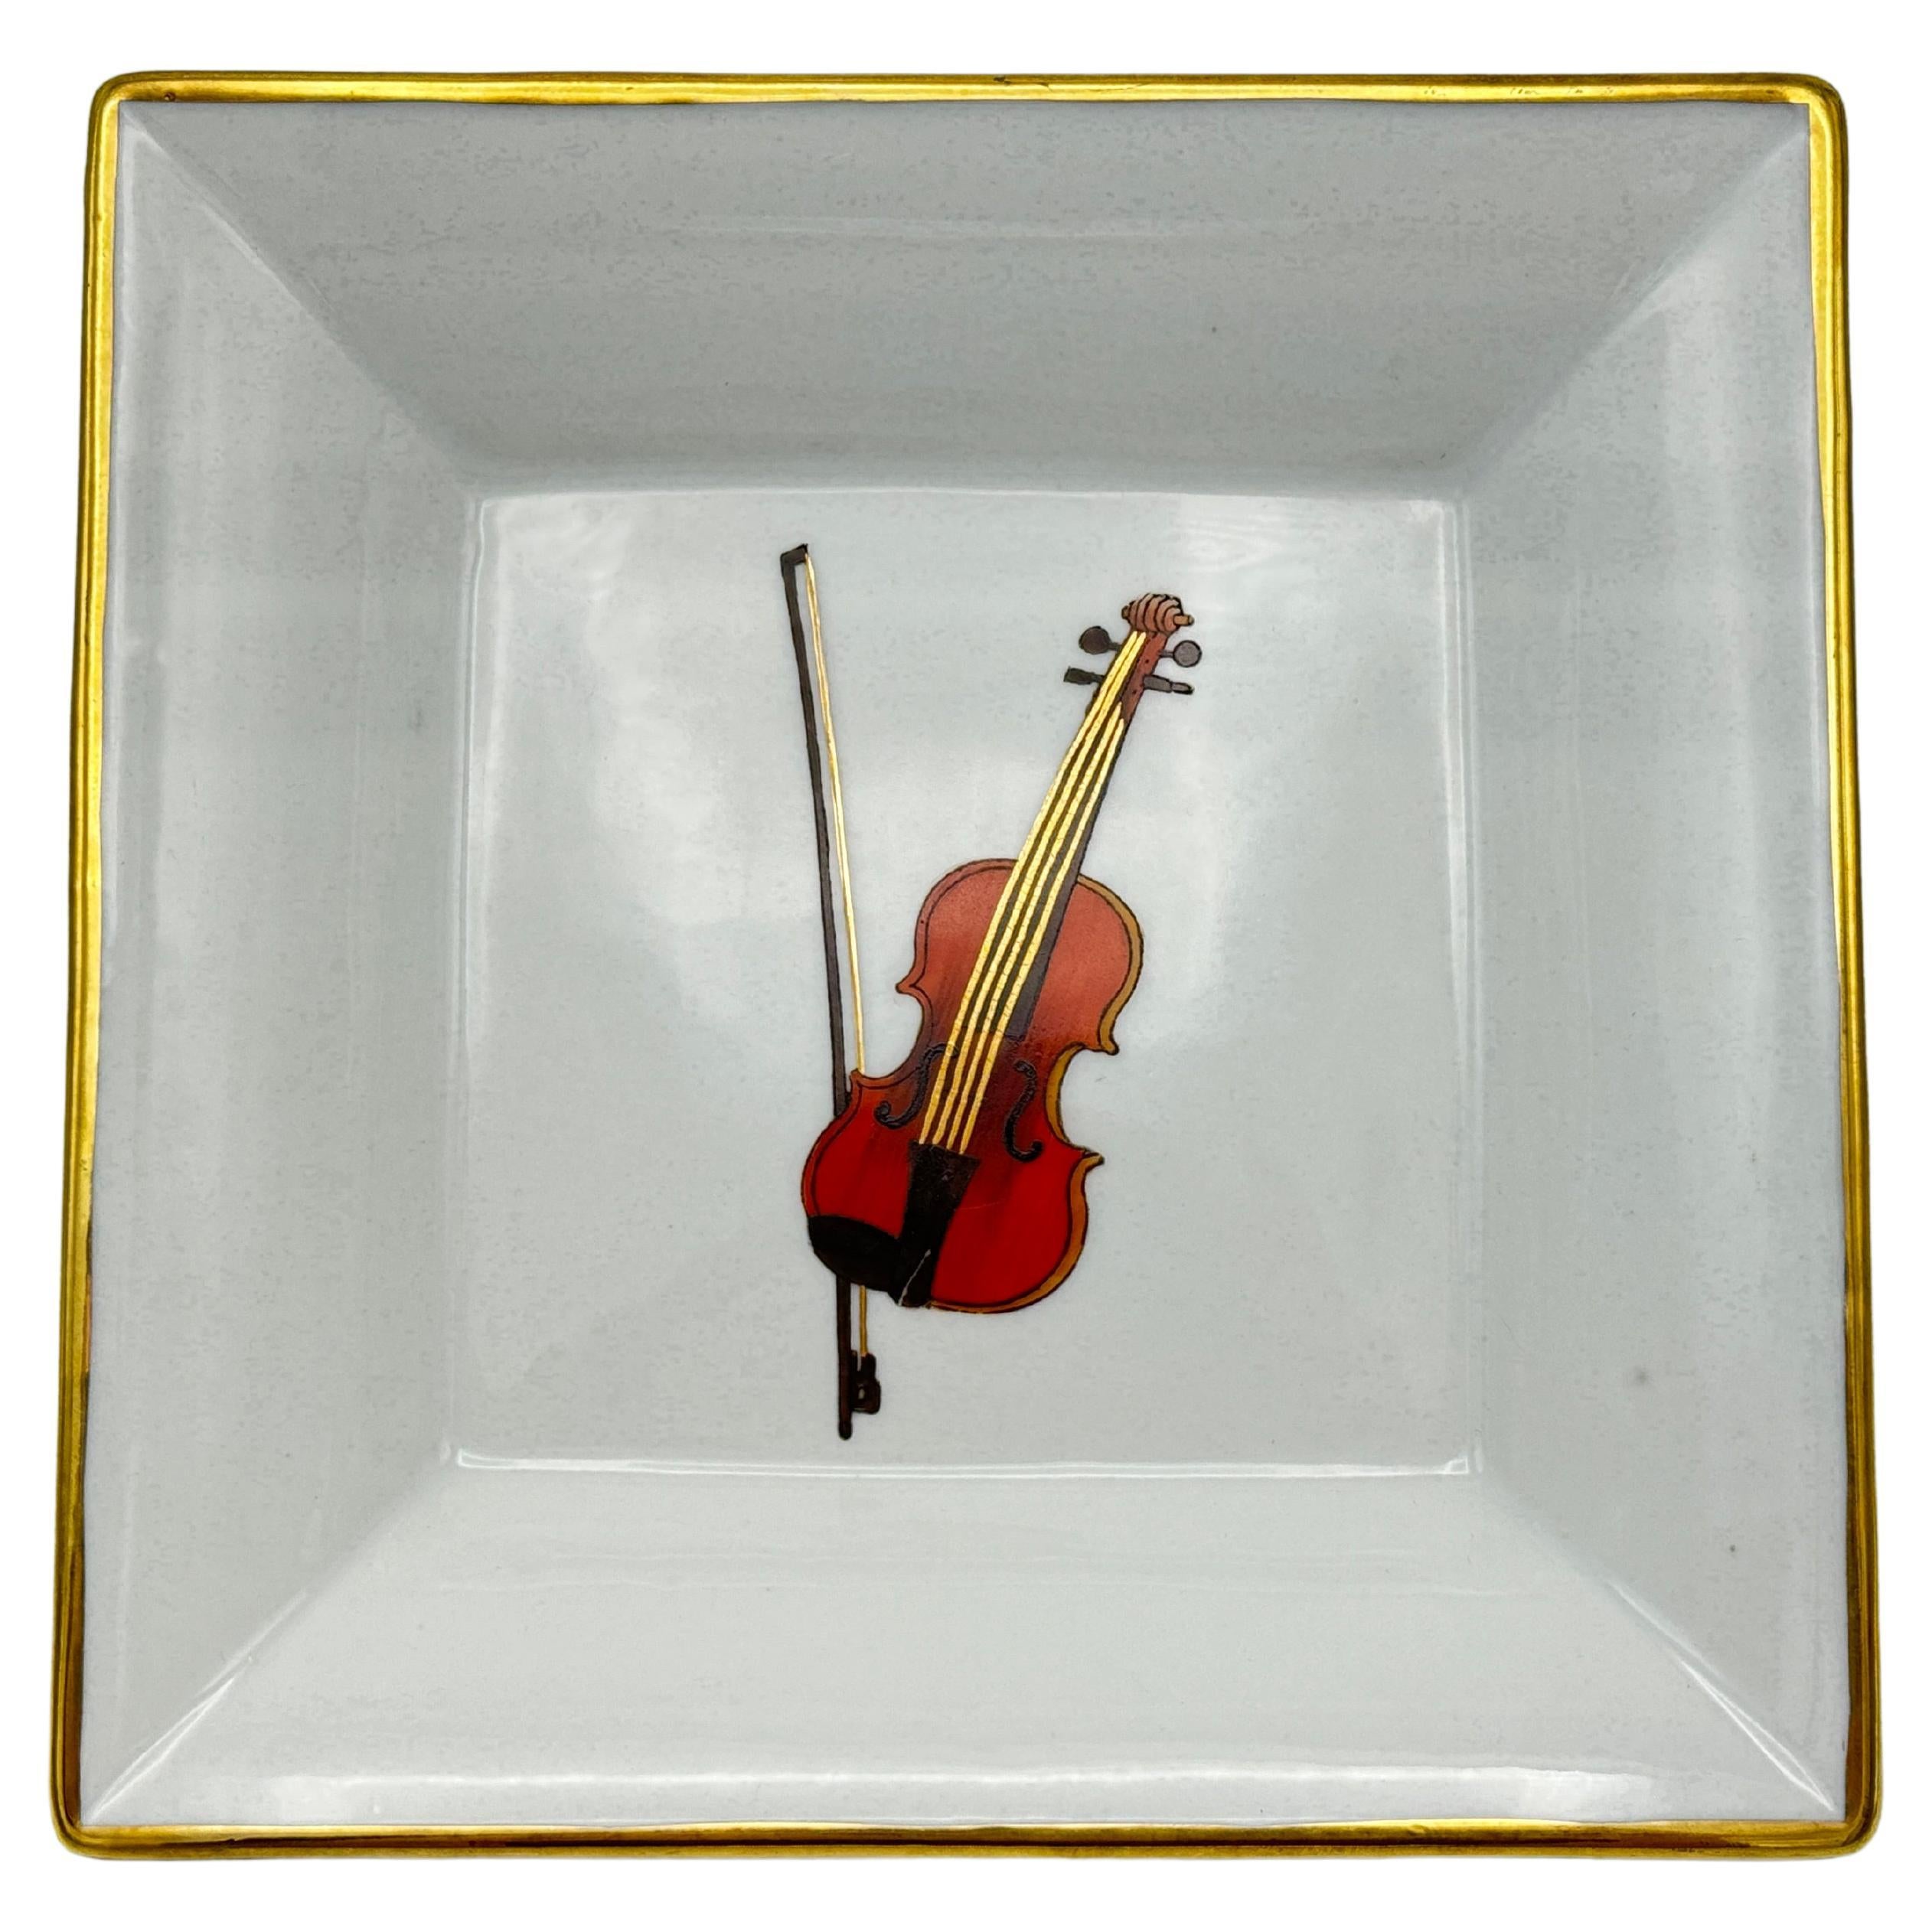 Porzellan- Valet-Schale mit Violin-Motiv